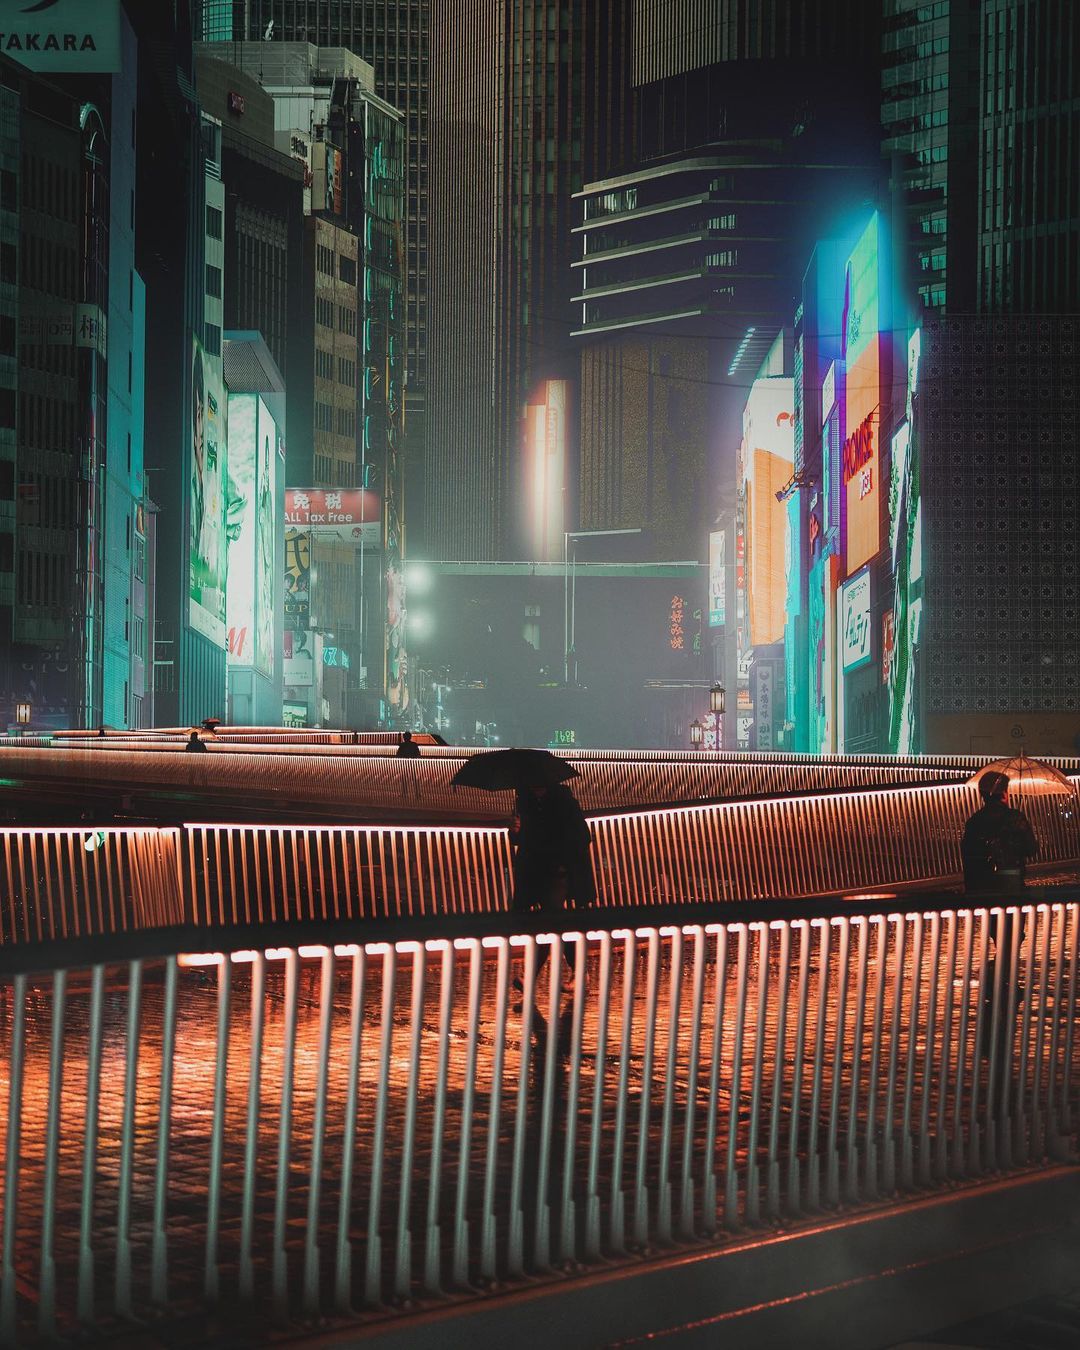 Ночь, улица, фонарь... Япония городской, талантливый, Японии, Читать, подписчиков, почти, Instagram, делится, работами, Своими, снимки, кинематографические, яркие, запечатлеть, чтобы, улицы, фотограф, исследует, фотографии, уличной